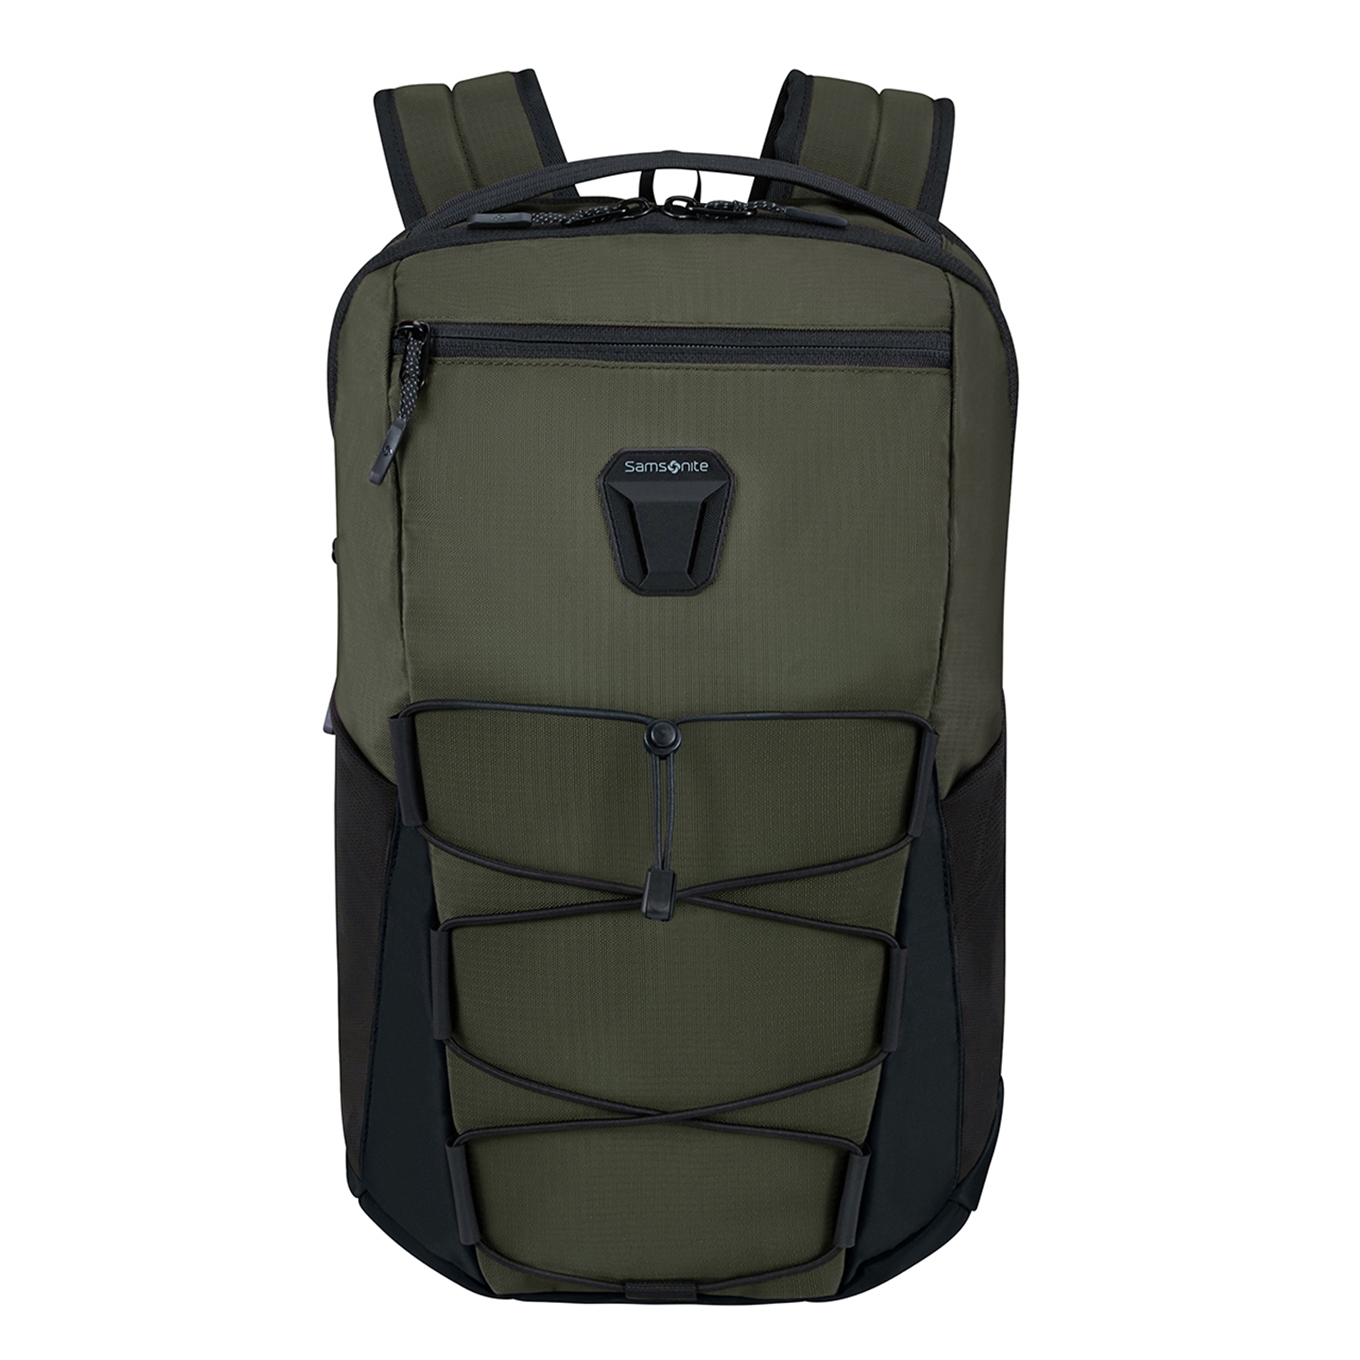 Samsonite Dye-Namic Backpack S 14.1" foliage green backpack